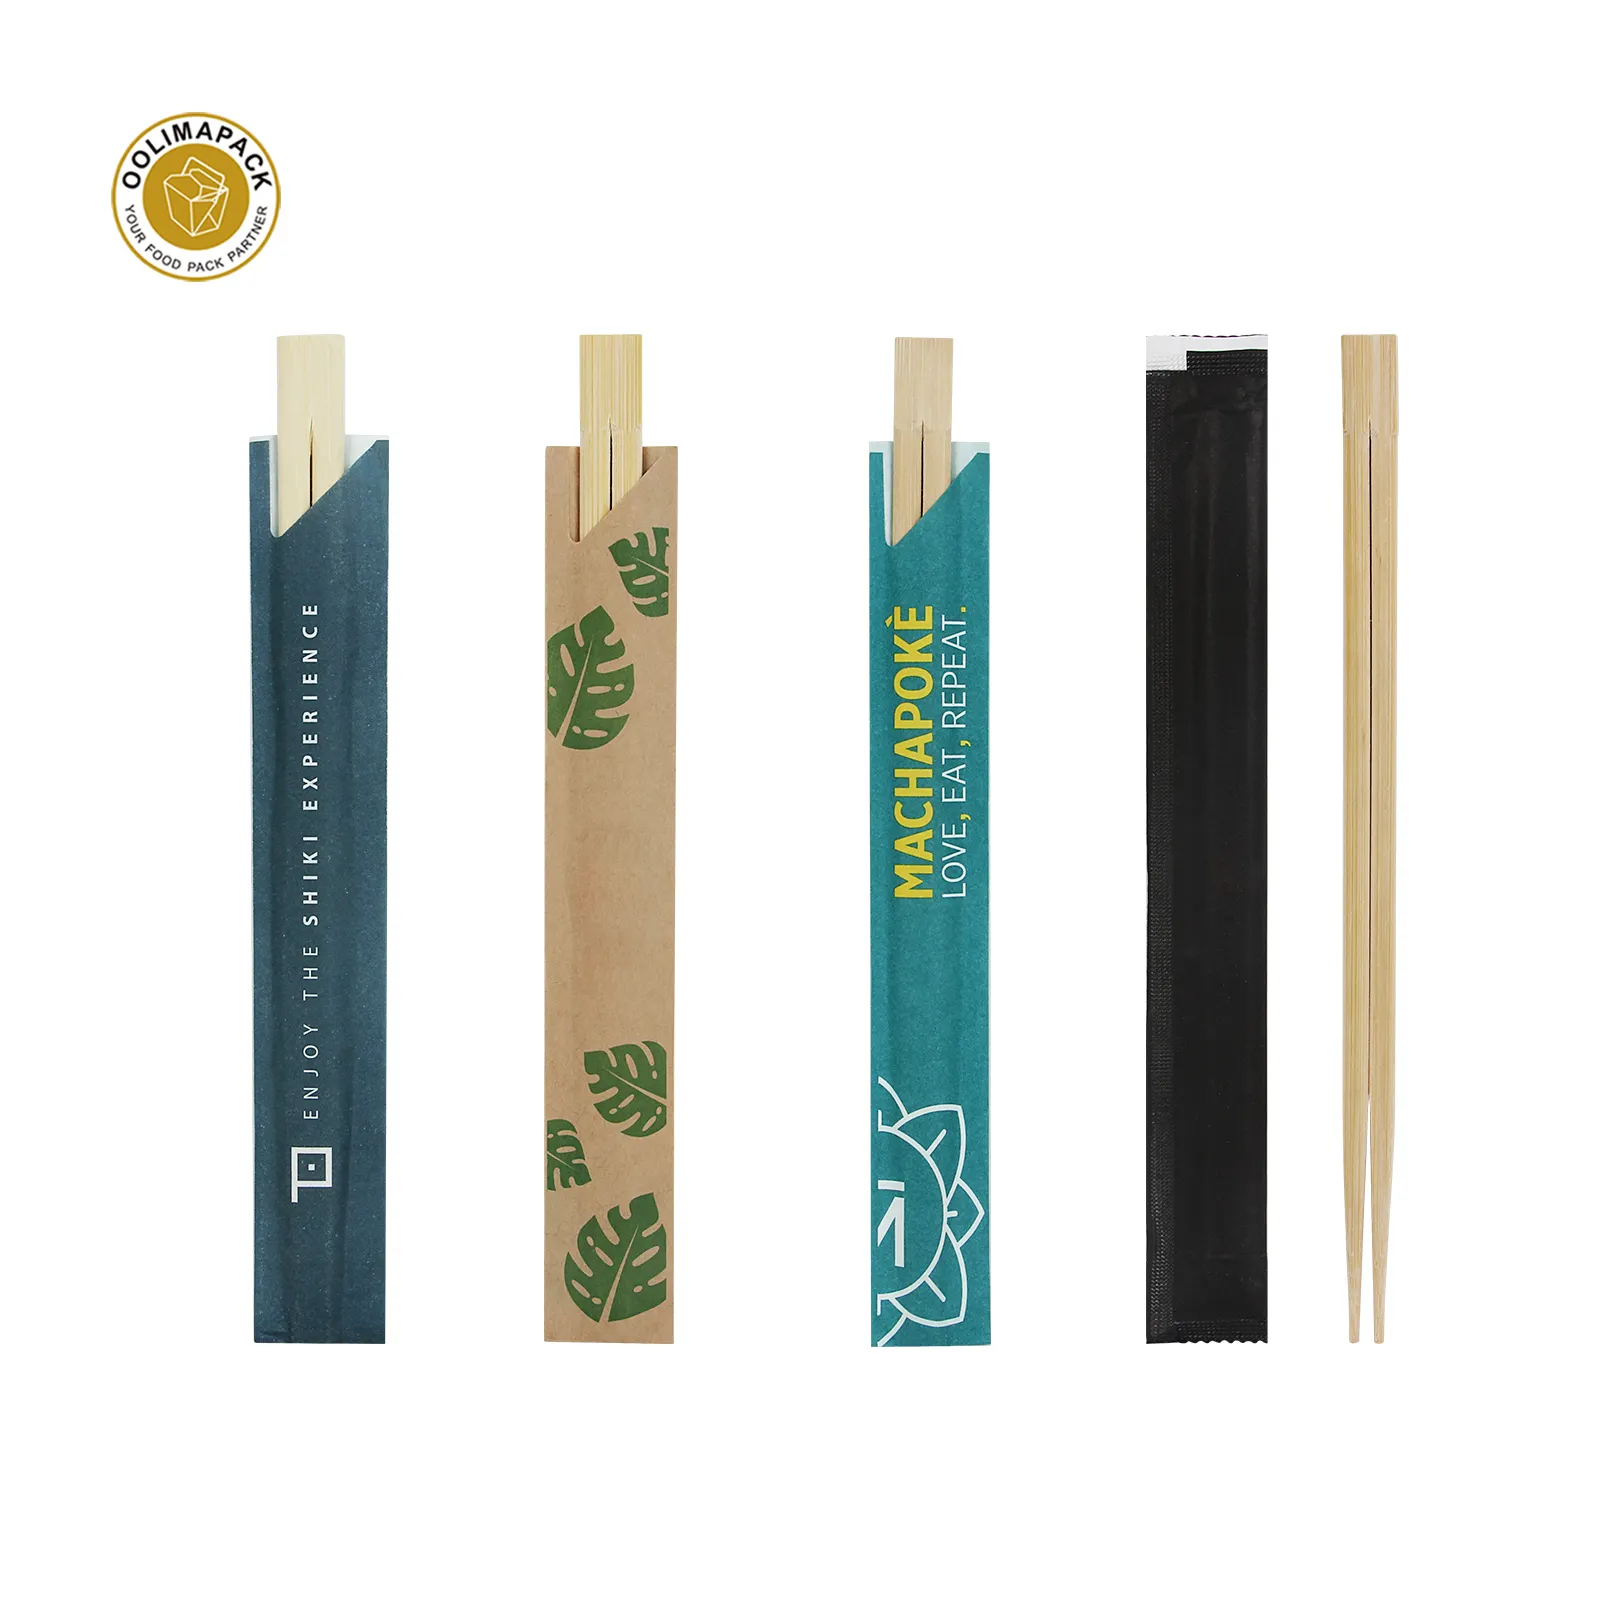 OOLIMA Proteccion डेल medio ambiente desechable palillos डे bambu